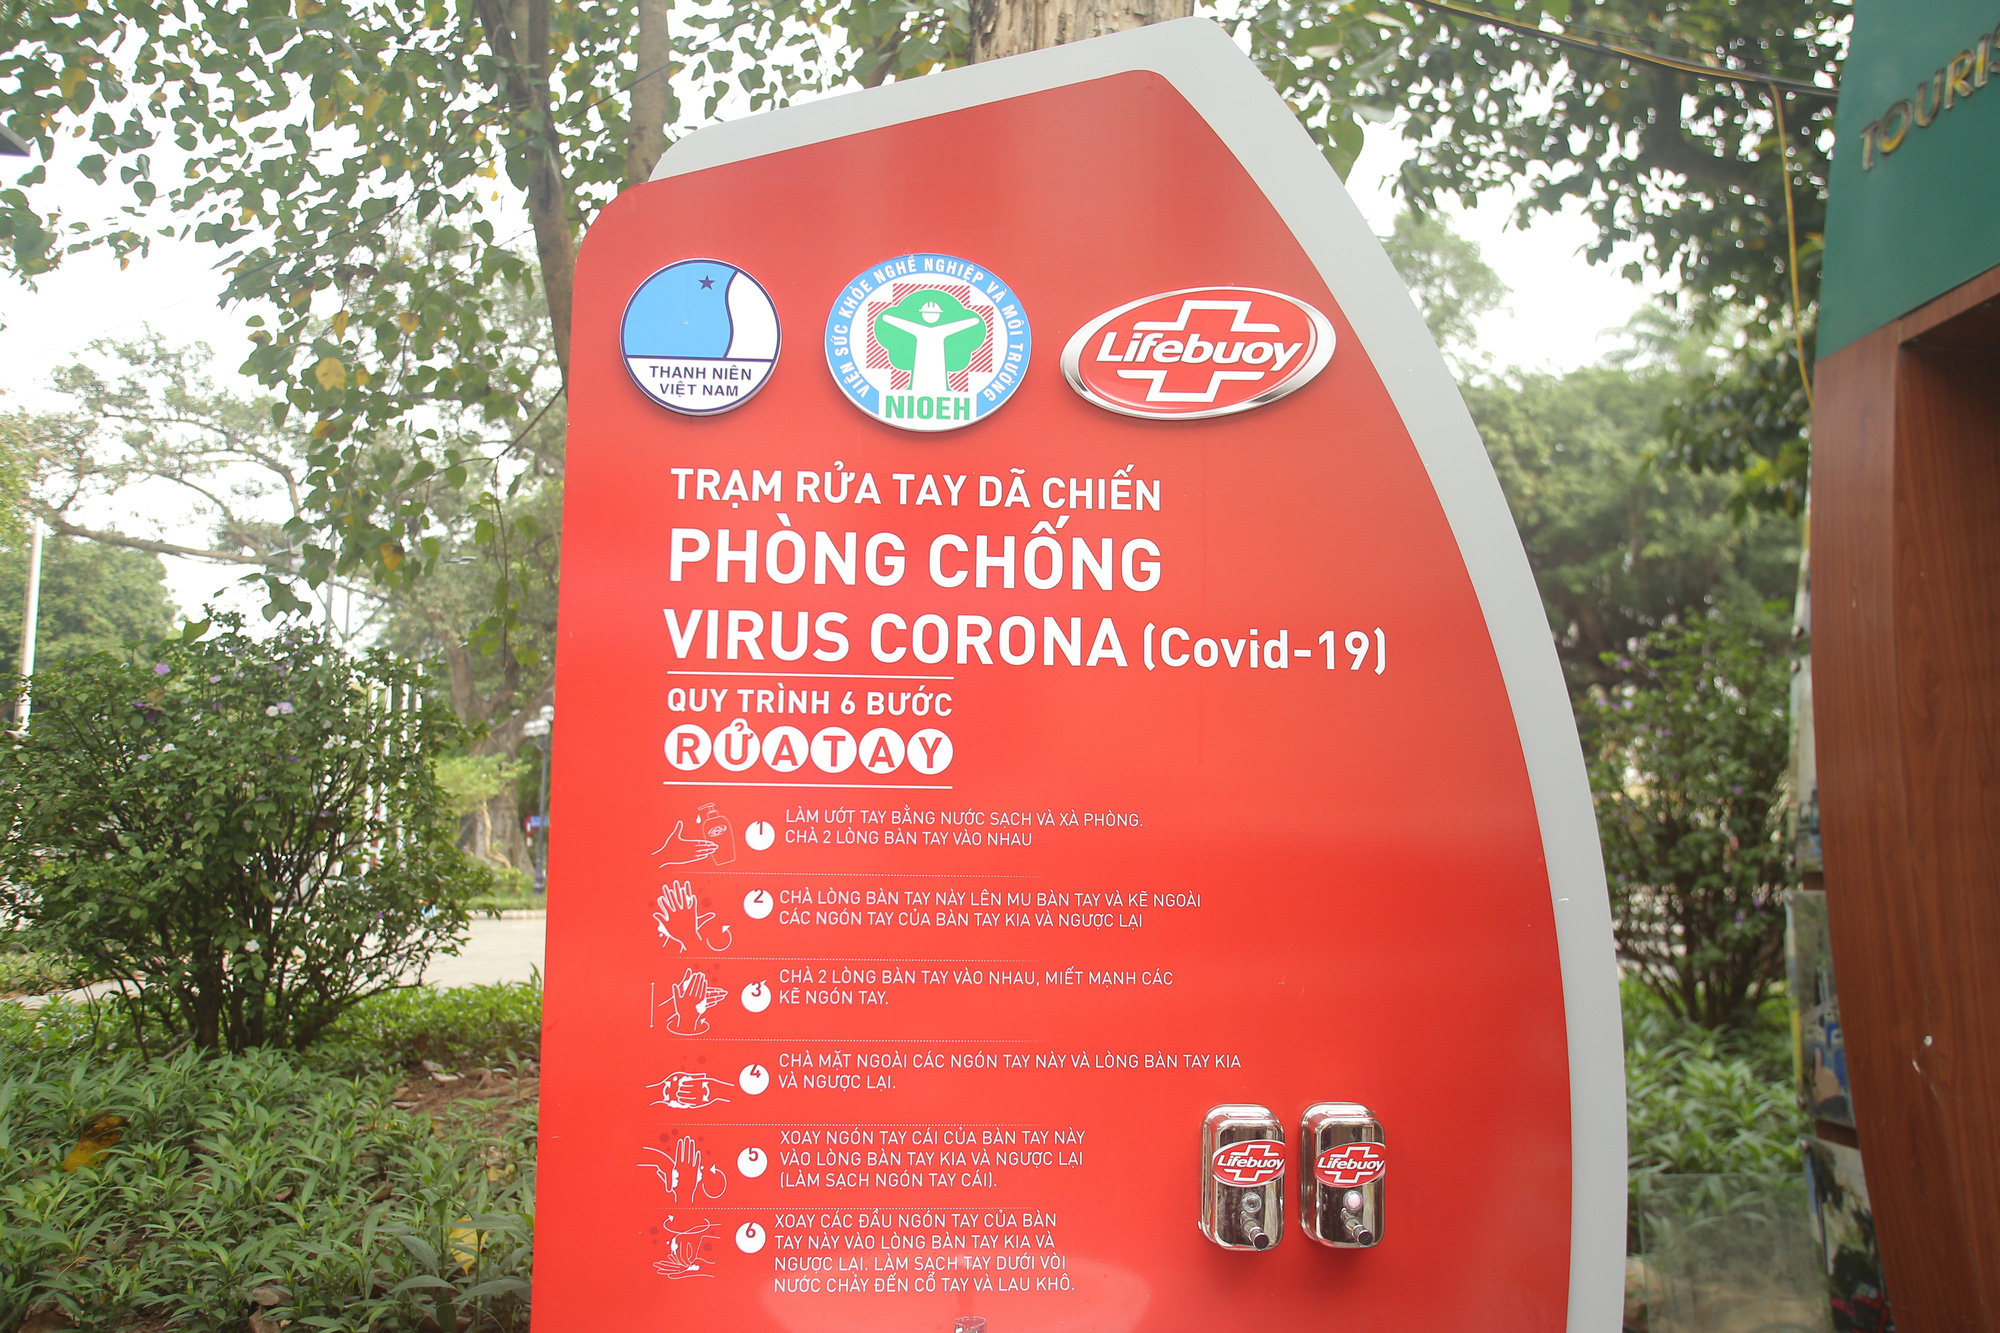 Lắp đặt trạm rửa tay dã chiến ở Hà Nội để phòng, chống dịch Covid-19 - Ảnh 5.